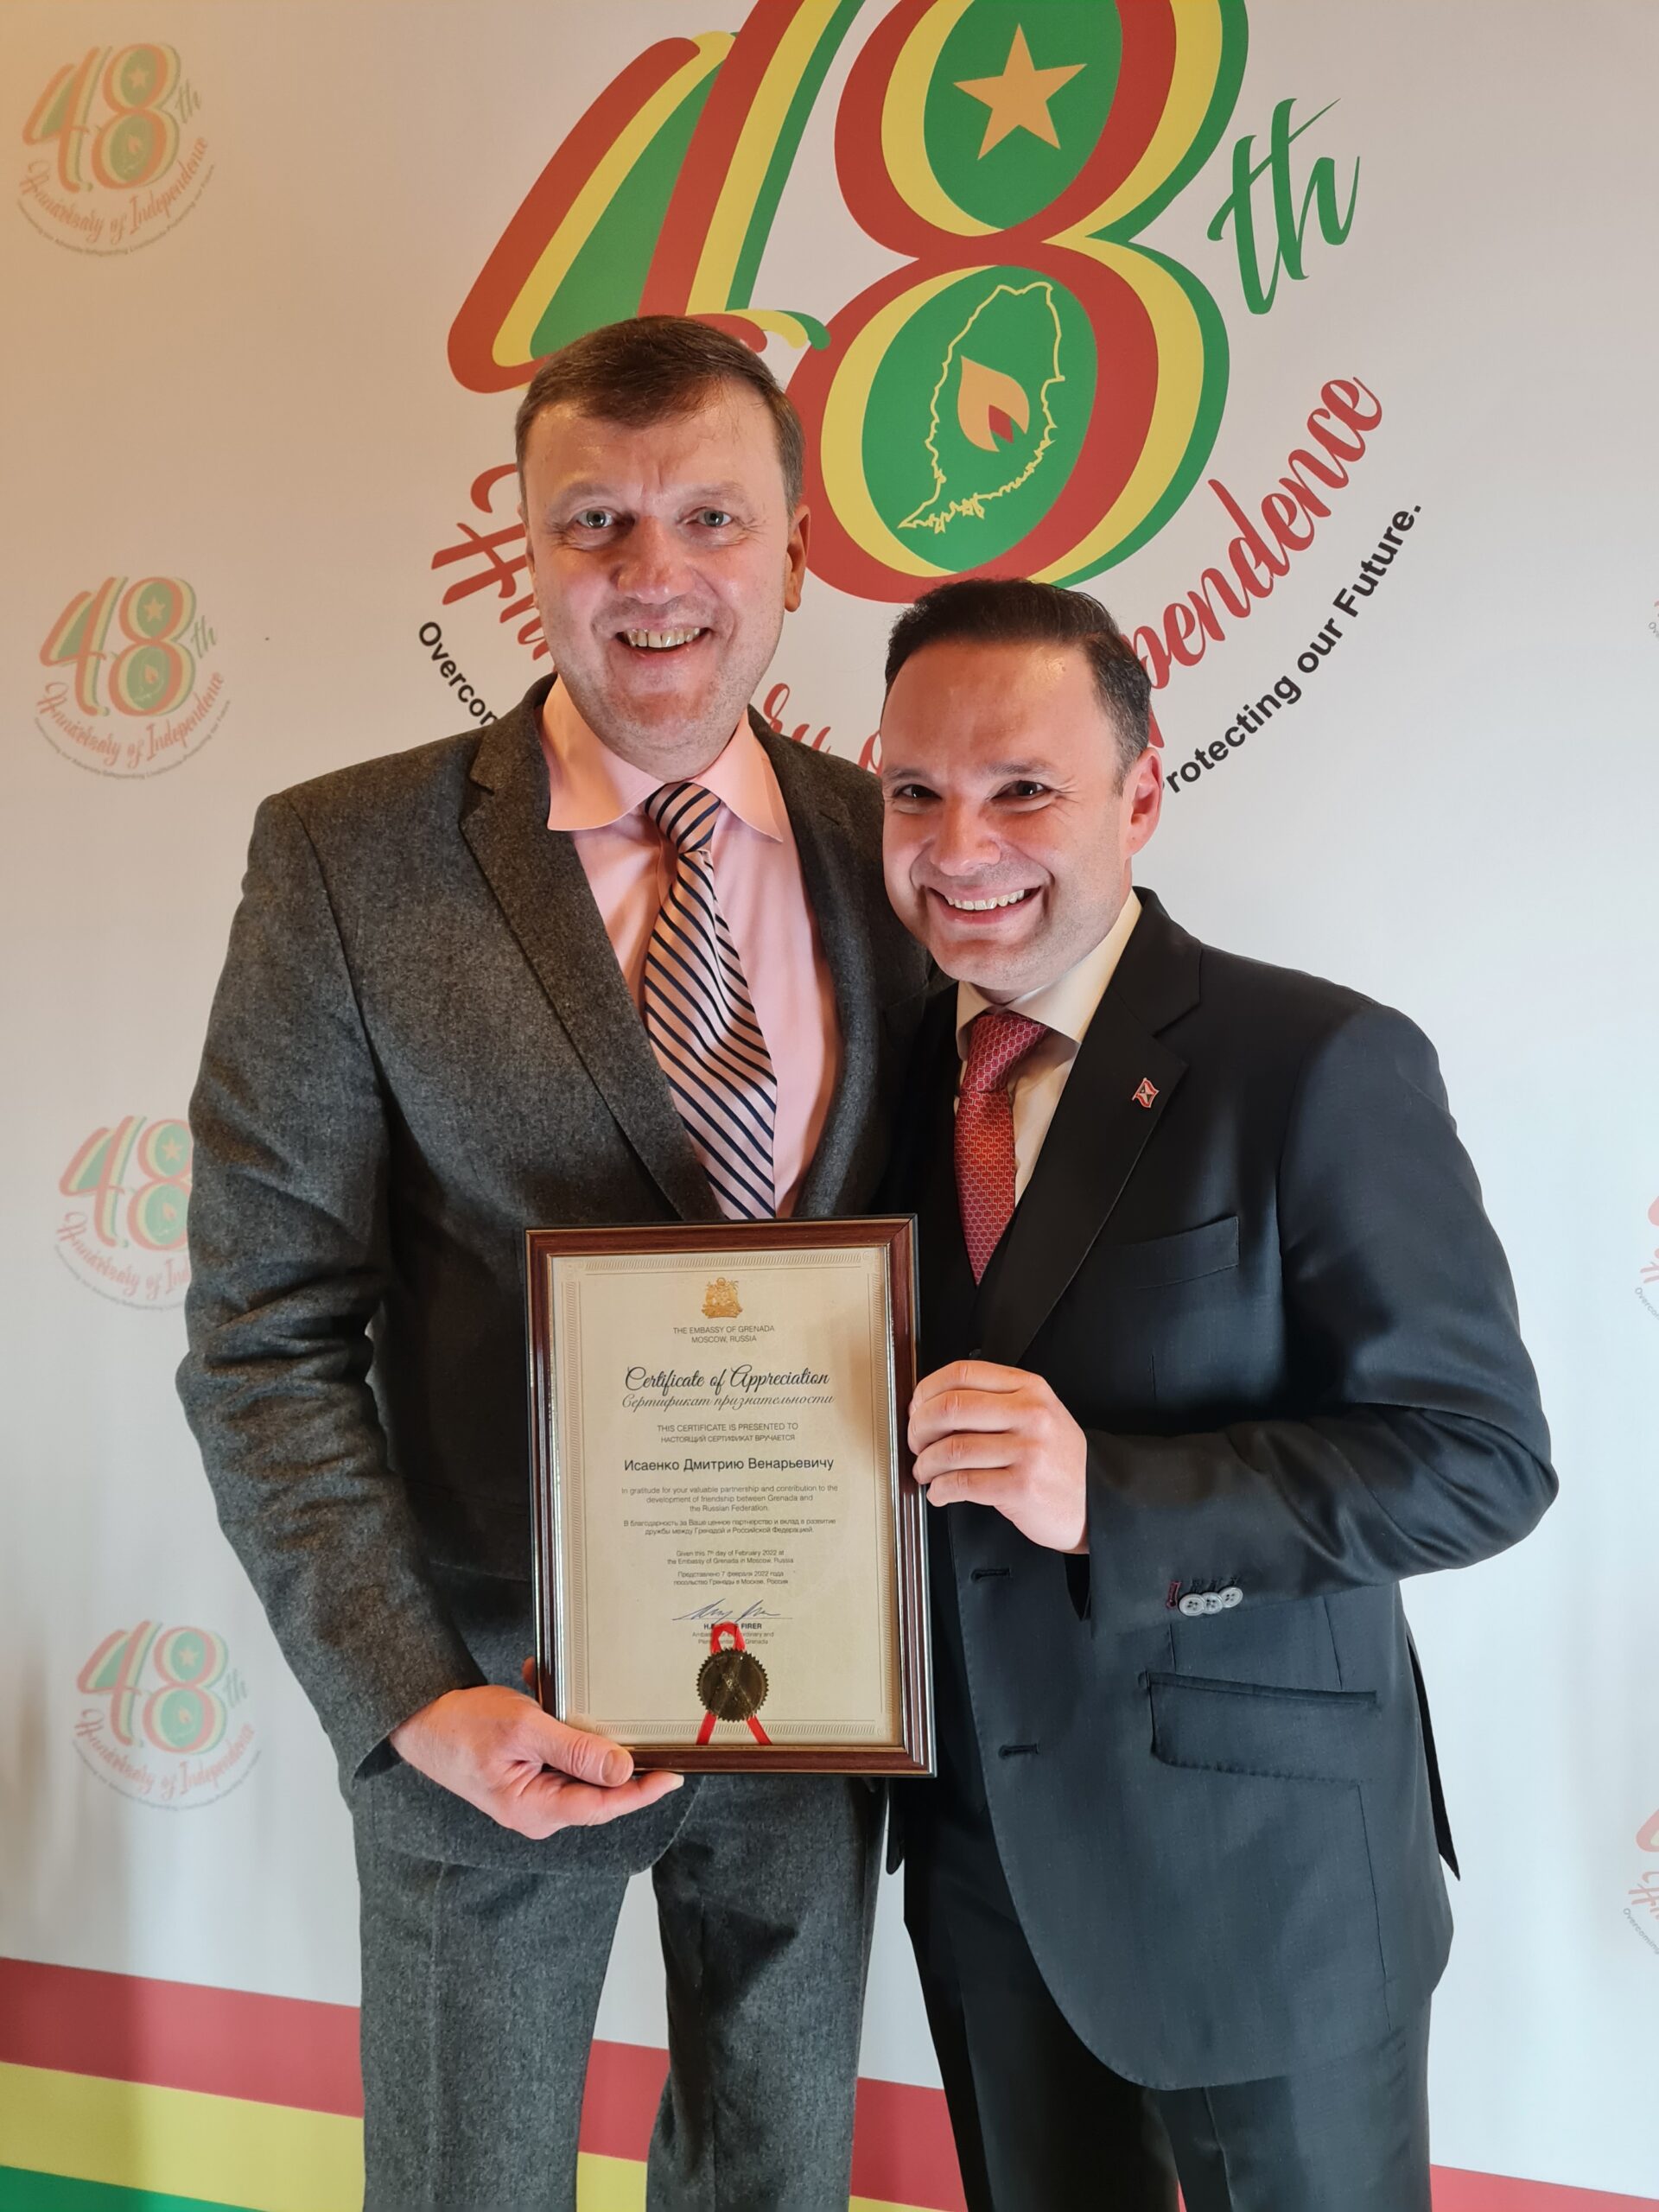 Дмитрий Исаенко награжден «Сертификатом  признательности» посольства Гренады в Москве за вклад в развитие дружбы между Гренадой и РФ